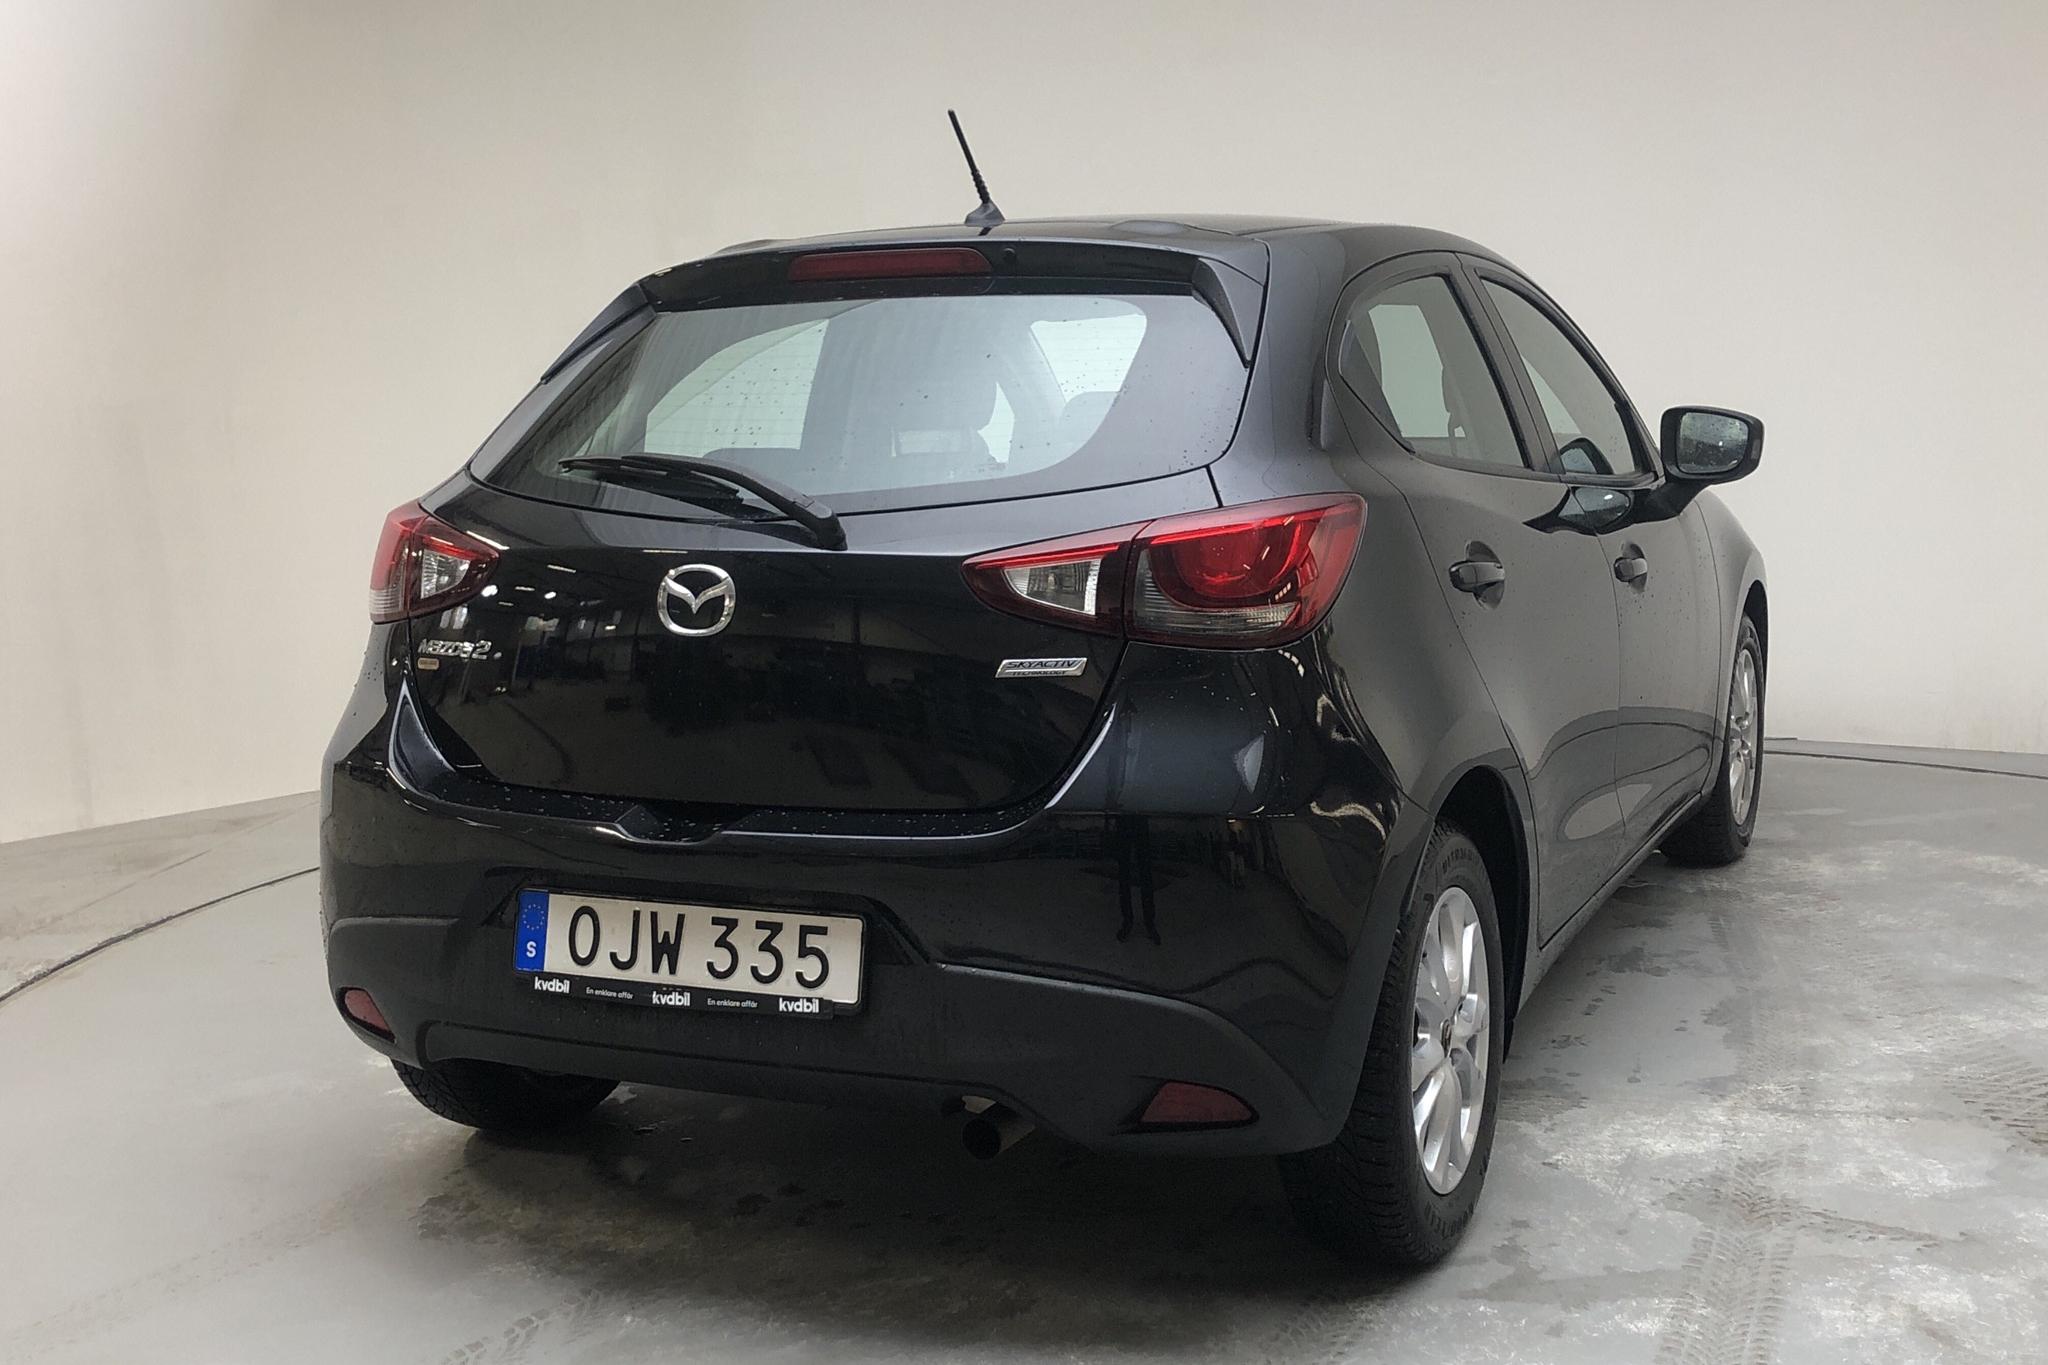 Mazda 2 1.5 5dr (90hk) - 35 030 km - Automatic - black - 2017